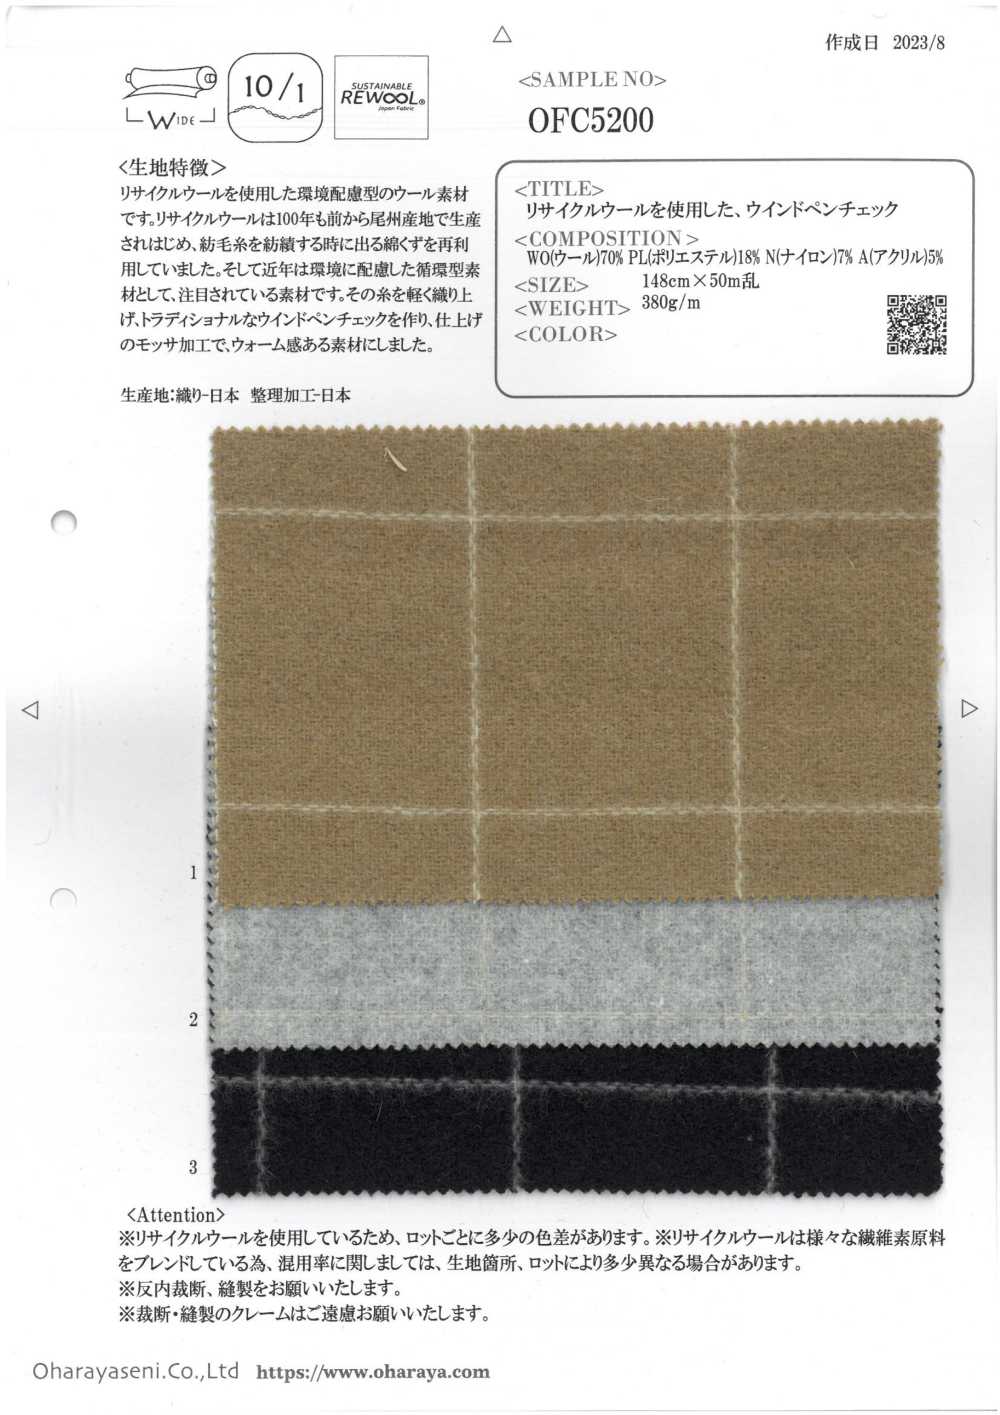 OFC5200 Contrôle Du Vent Avec De La Laine Recyclée[Fabrication De Textile] Oharayaseni